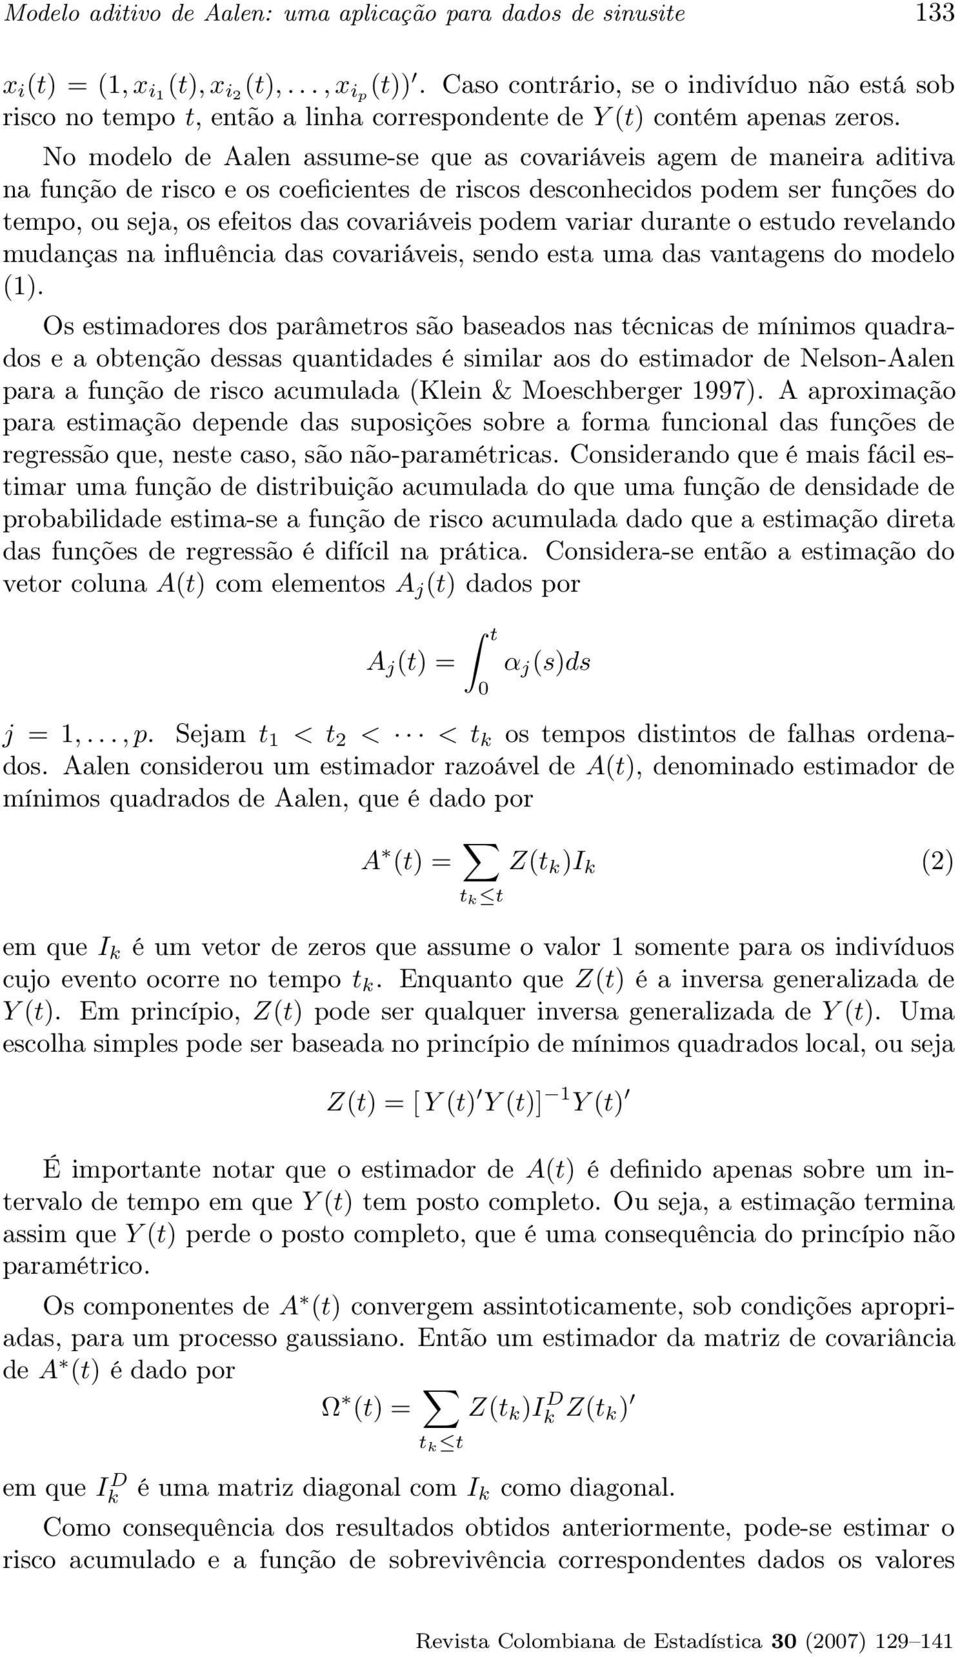 No modelo de Aalen assume-se que as covariáveis agem de maneira aditiva na função de risco e os coeficientes de riscos desconhecidos podem ser funções do tempo, ou seja, os efeitos das covariáveis